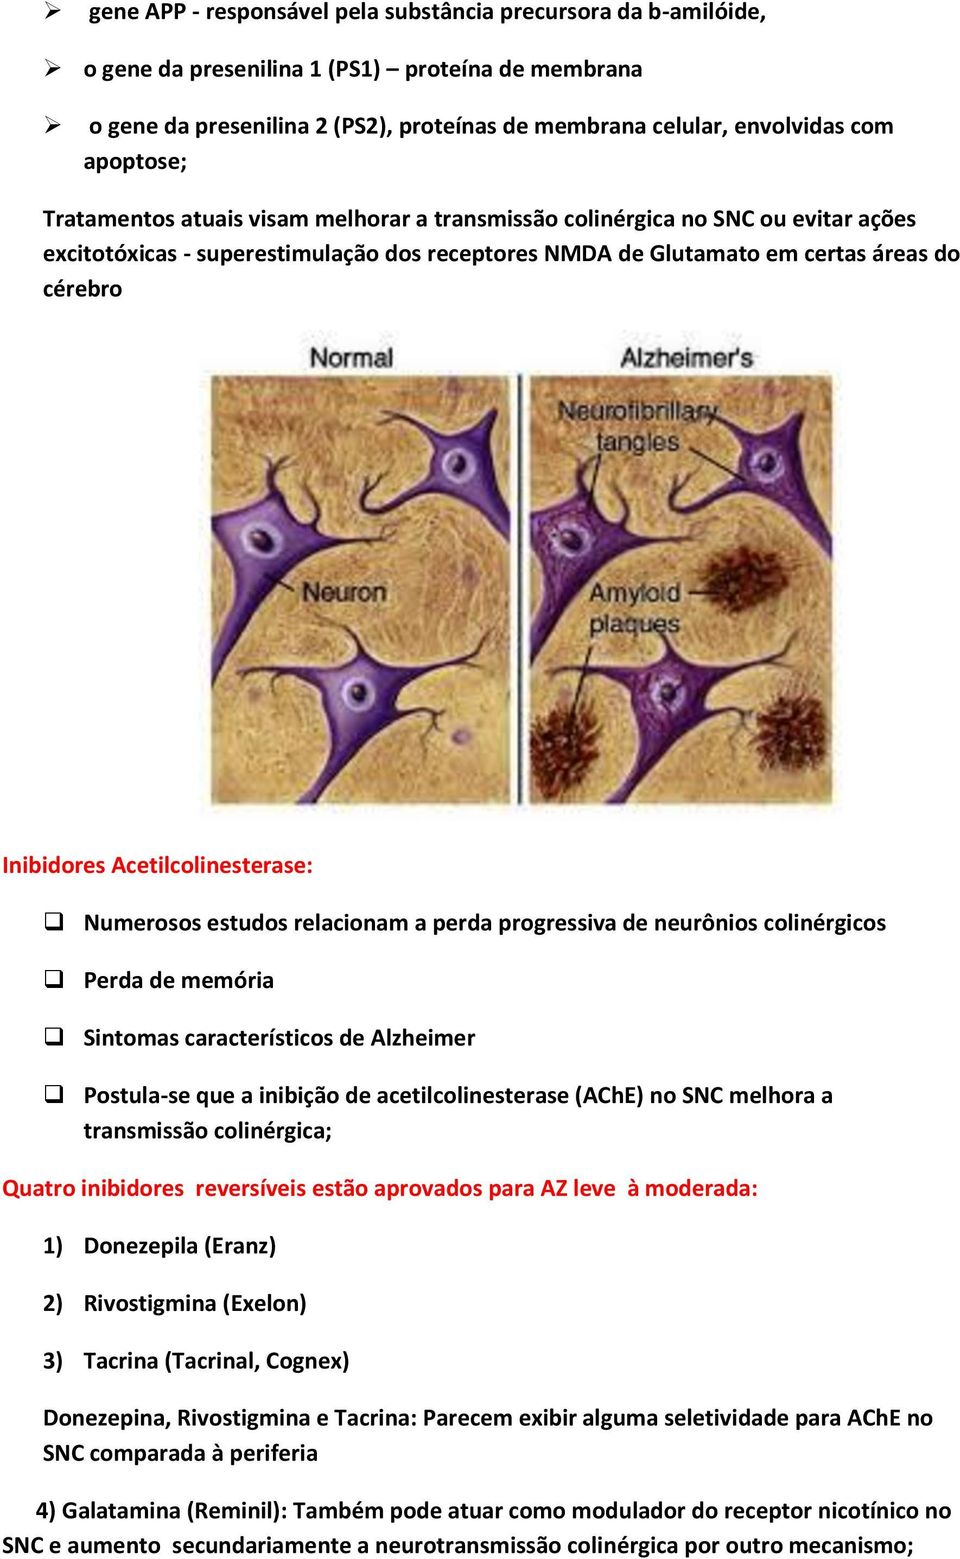 Acetilcolinesterase: Numerosos estudos relacionam a perda progressiva de neurônios colinérgicos Perda de memória Sintomas característicos de Alzheimer Postula-se que a inibição de acetilcolinesterase